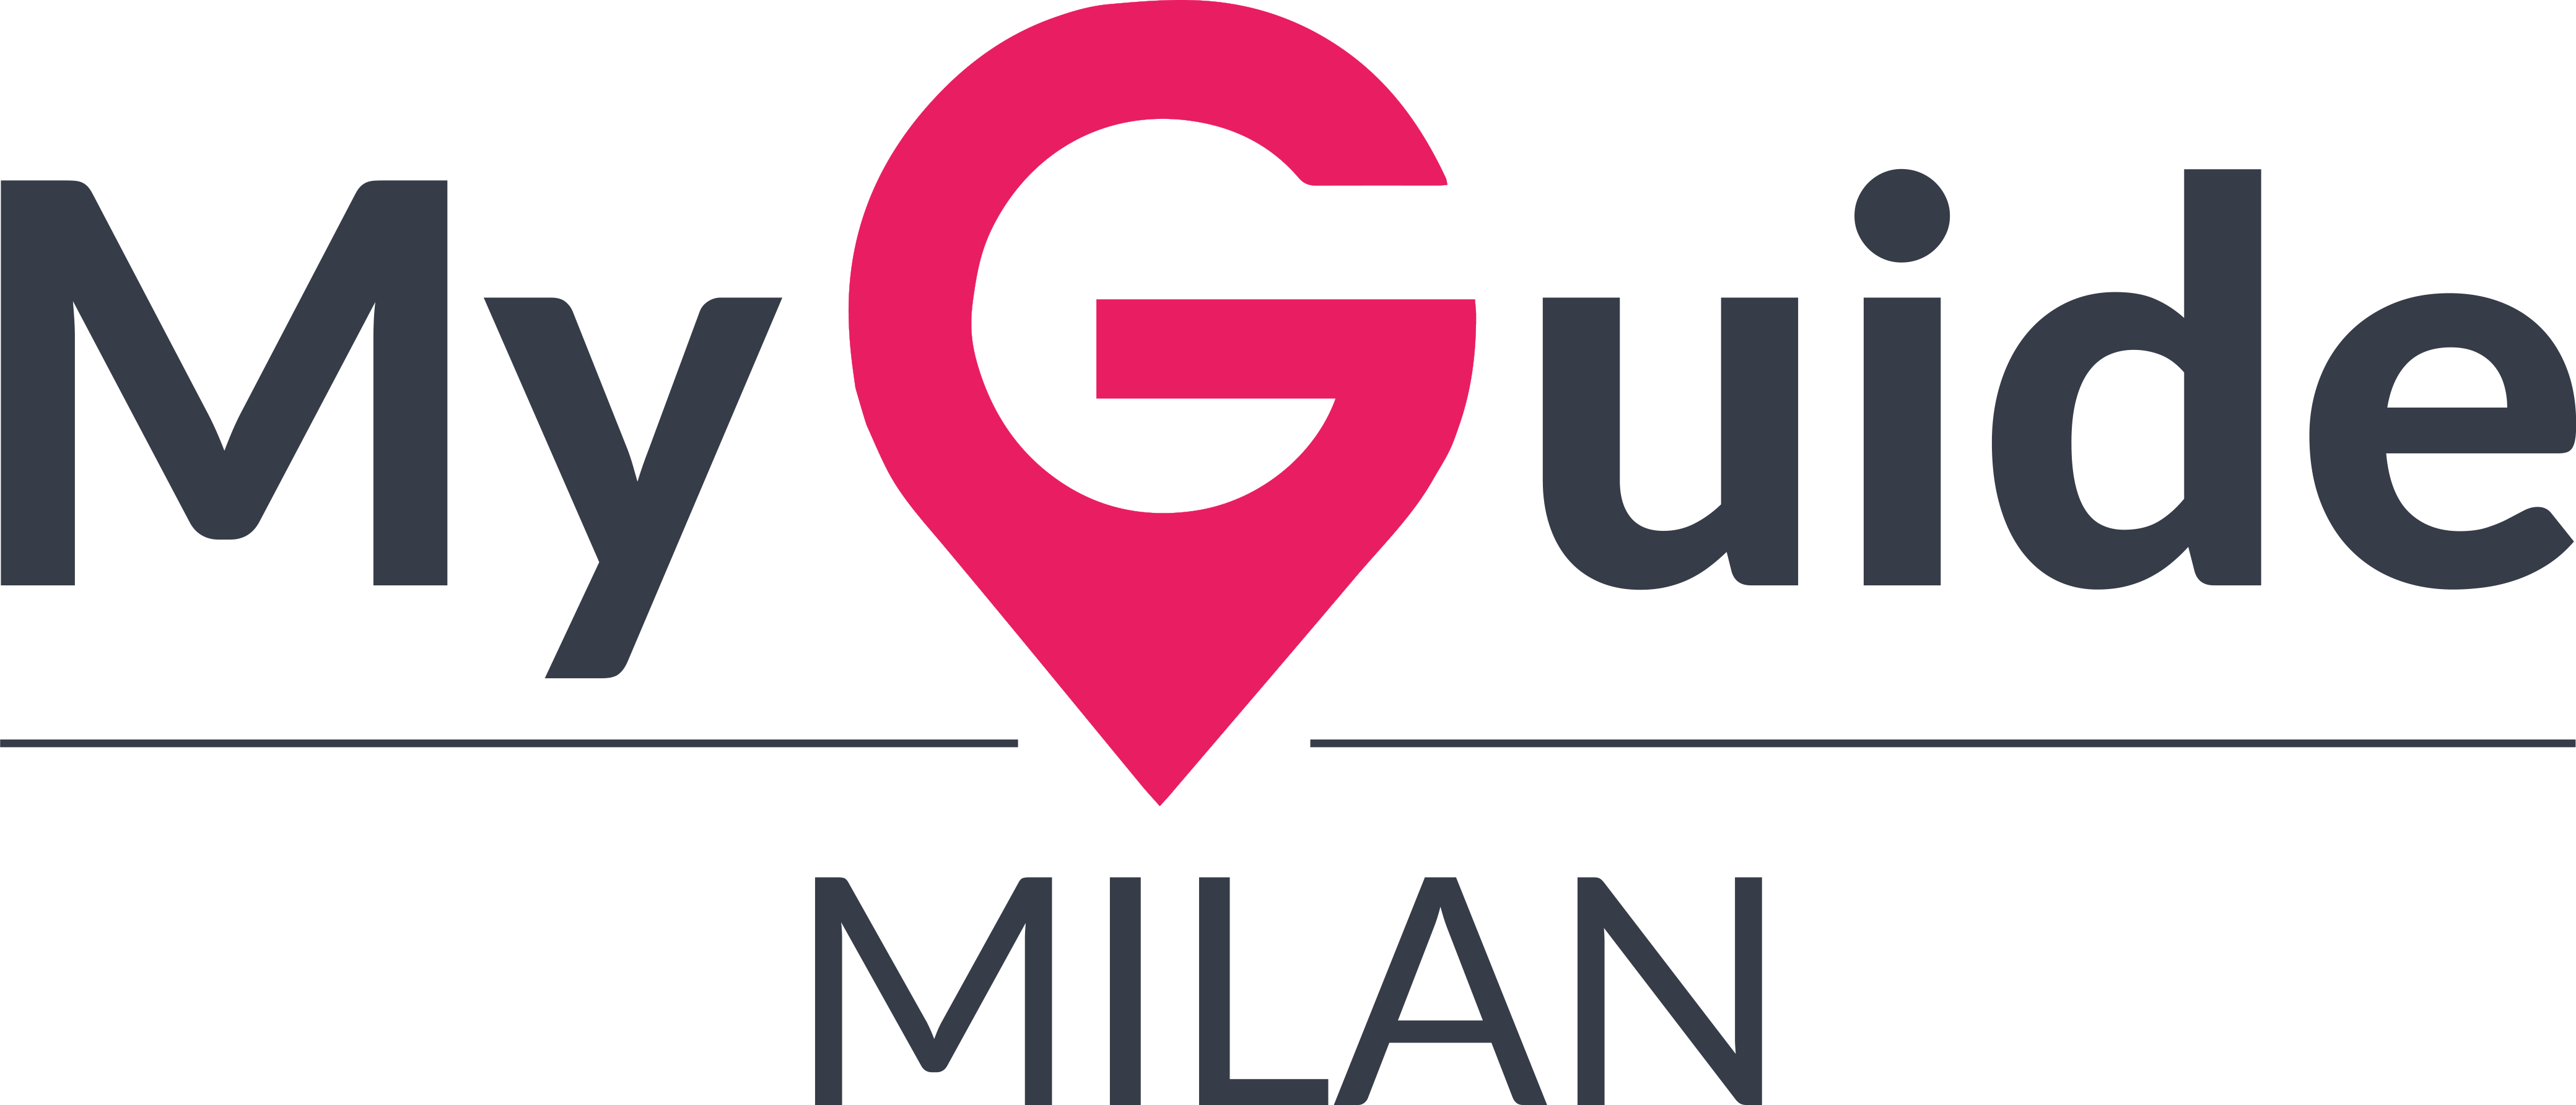 My Guide Milan